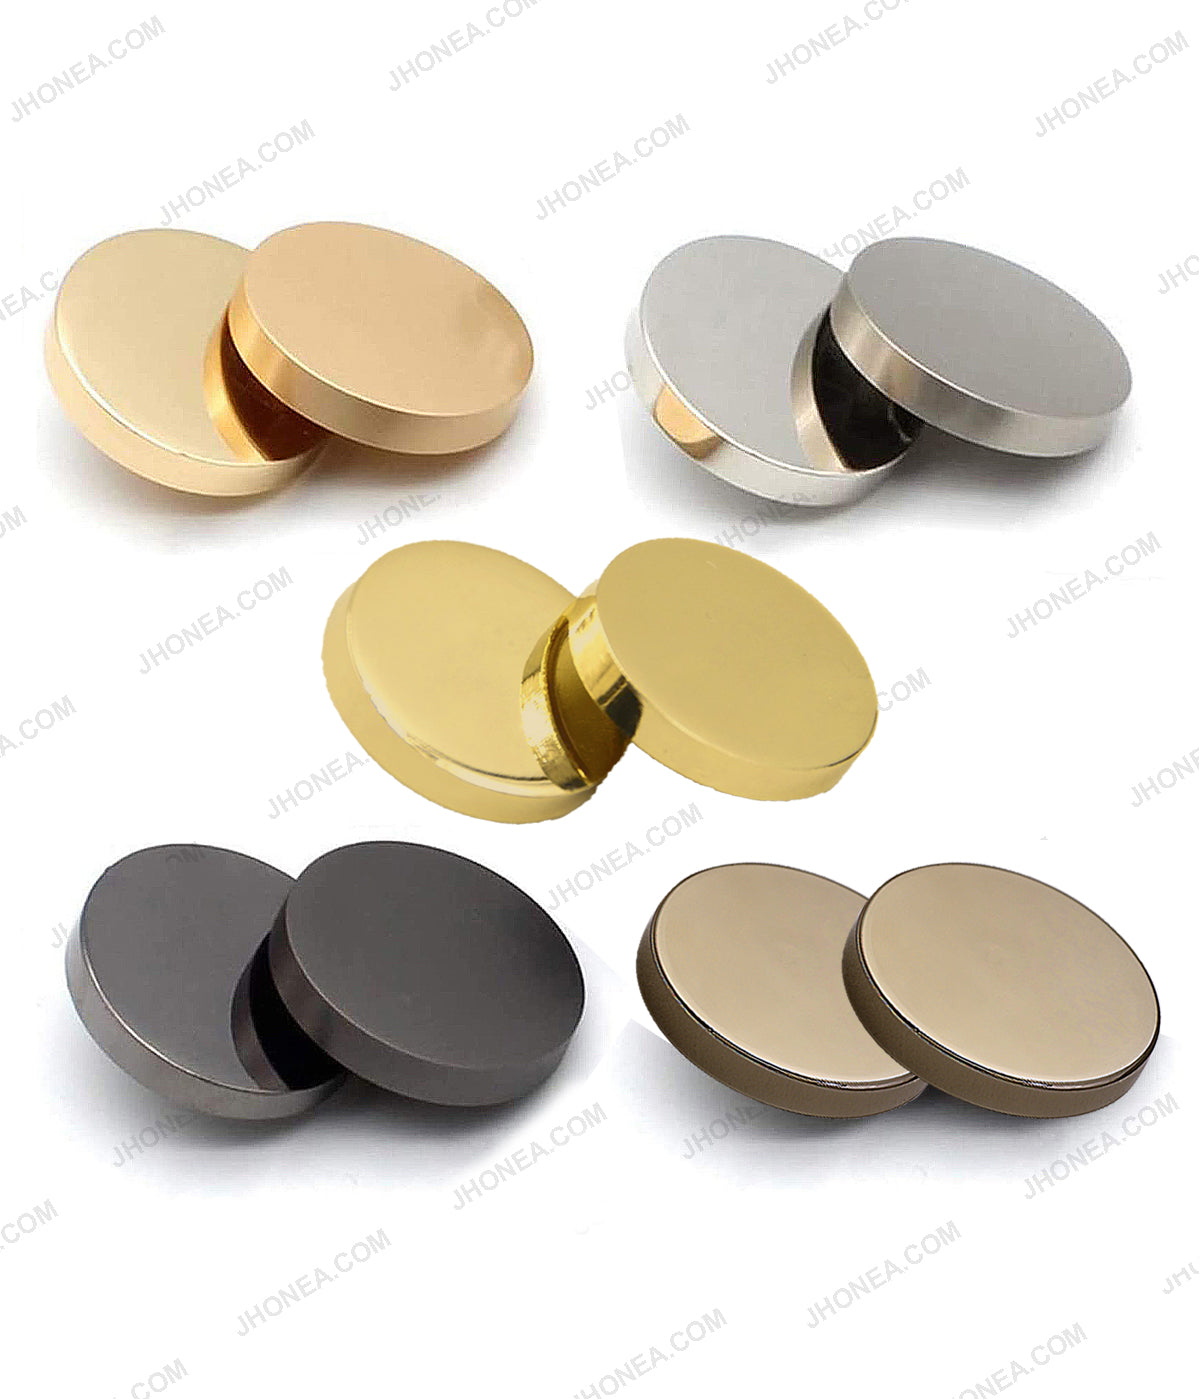 Gold Crest Metal Shank Buttons - 20mm